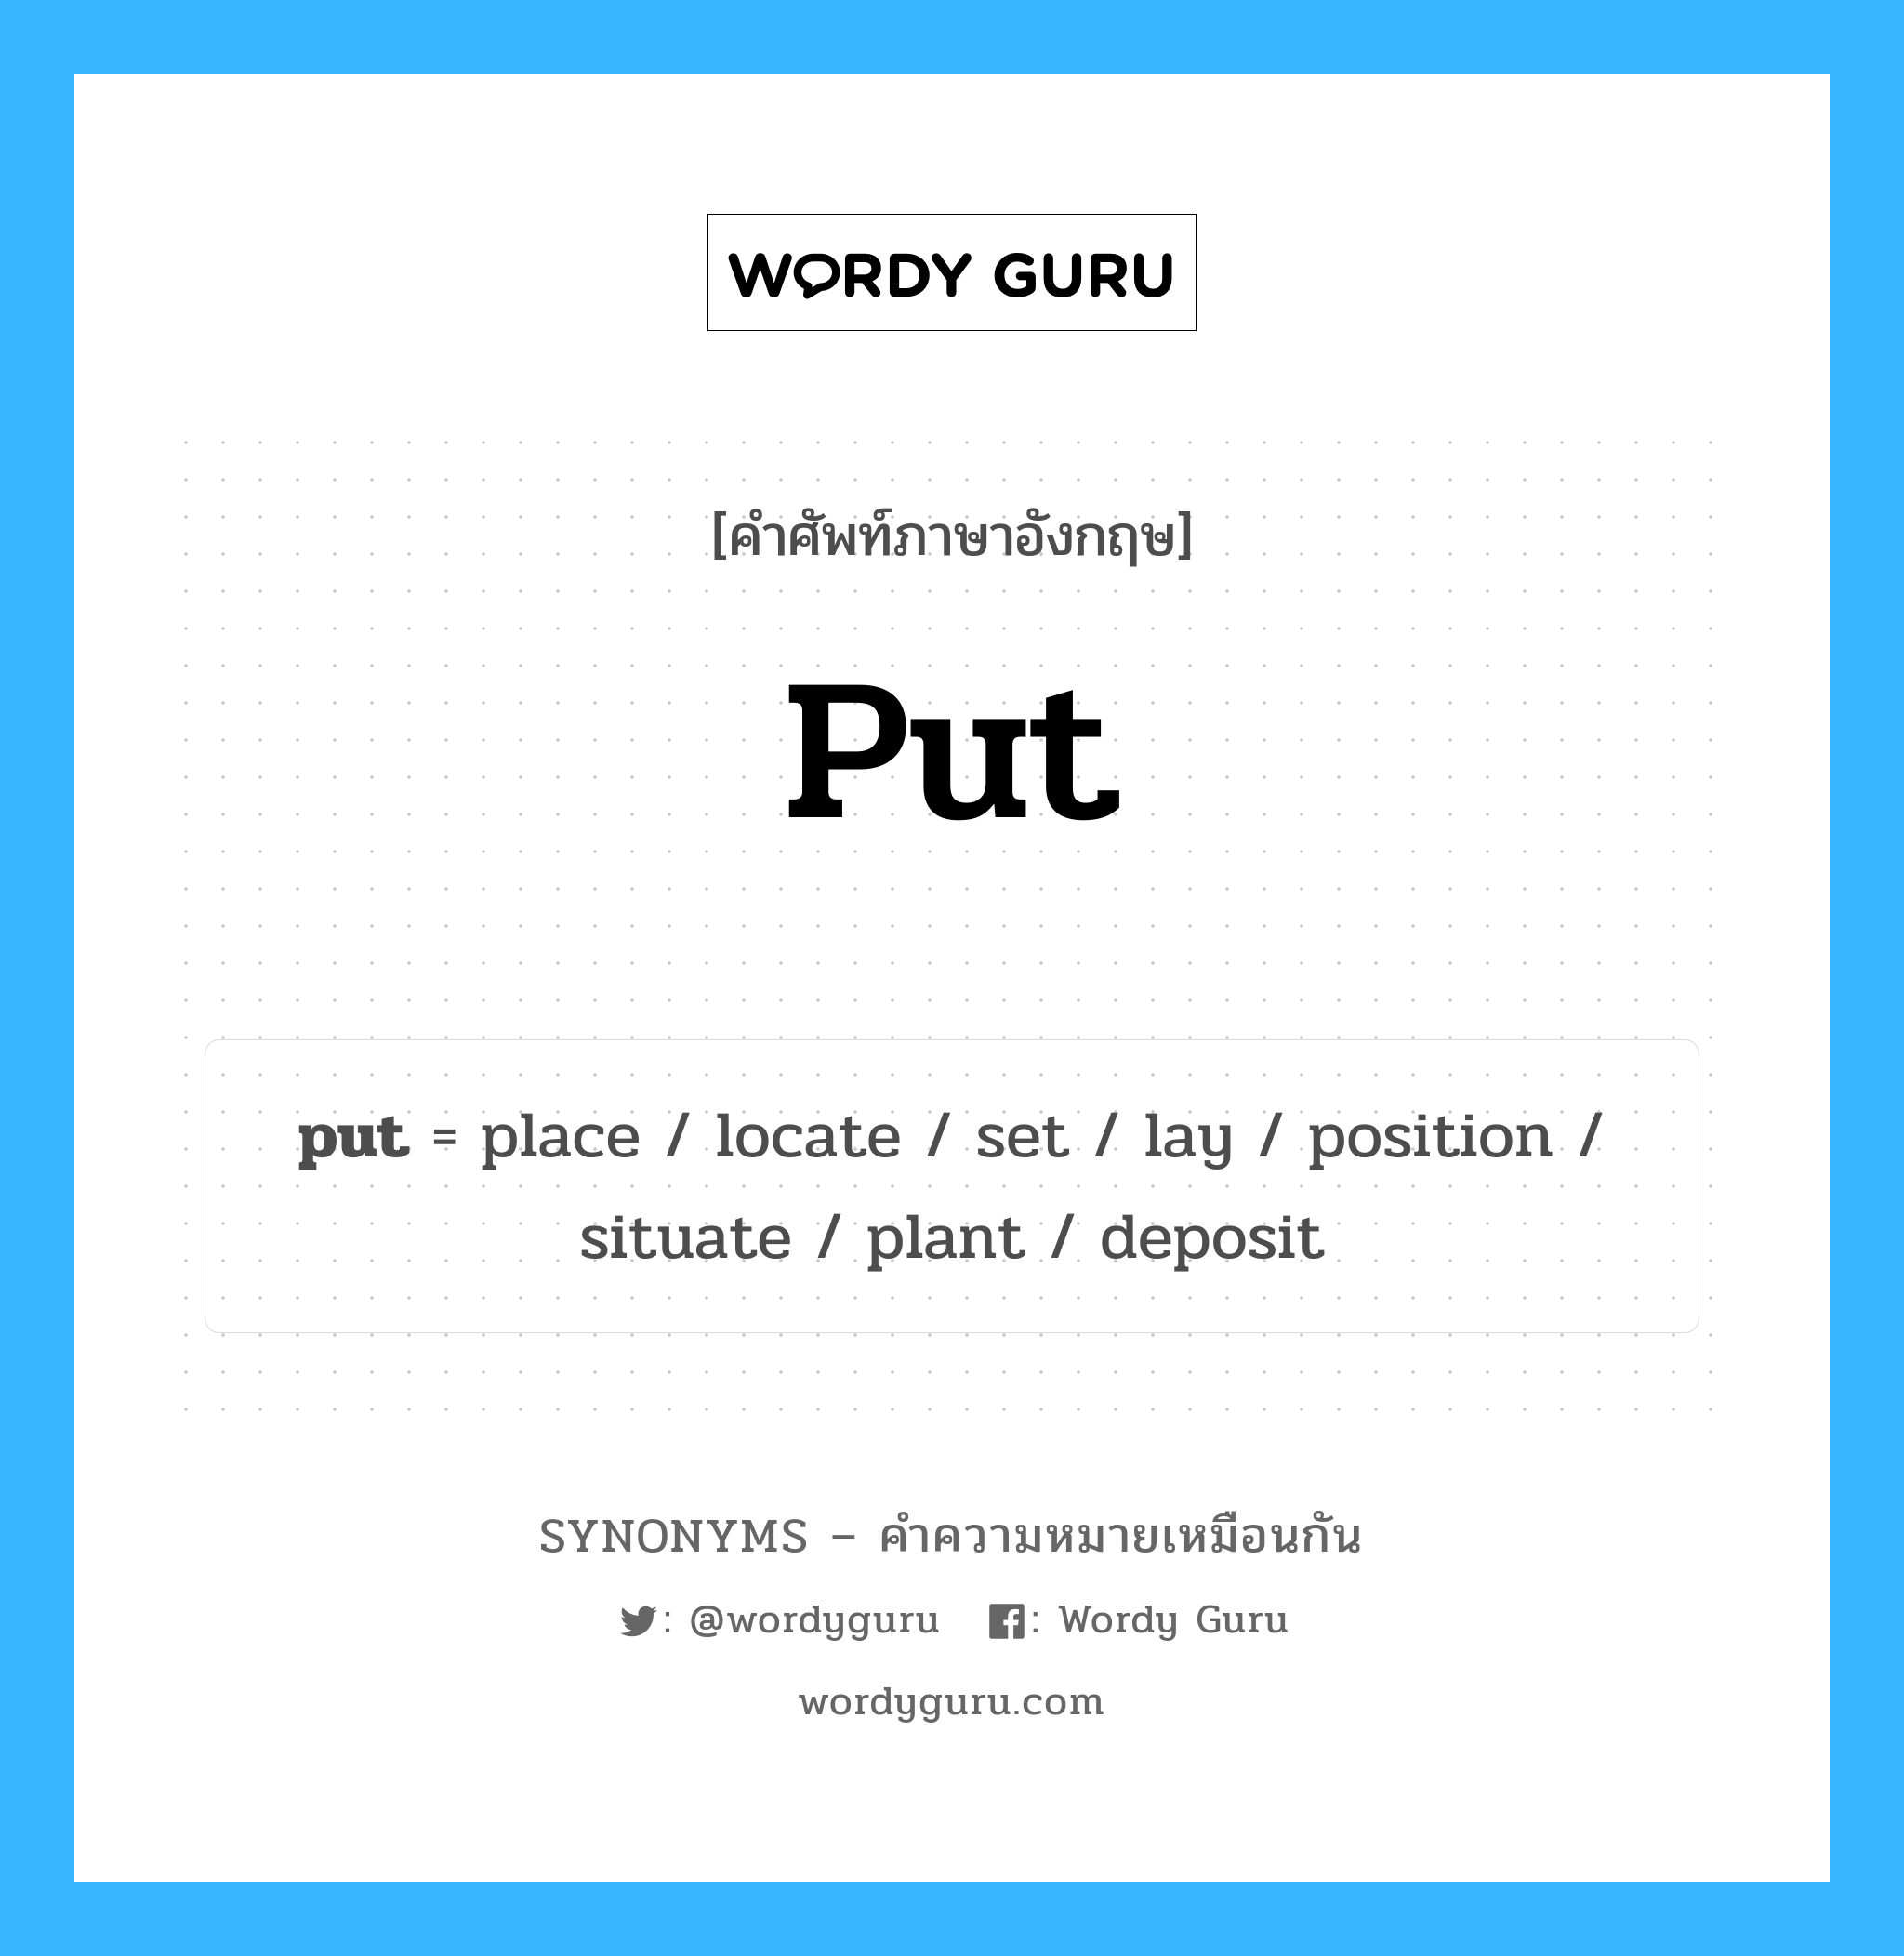 put เป็นหนึ่งใน plant และมีคำอื่น ๆ อีกดังนี้, คำศัพท์ภาษาอังกฤษ put ความหมายคล้ายกันกับ plant แปลว่า โรงงาน หมวด plant